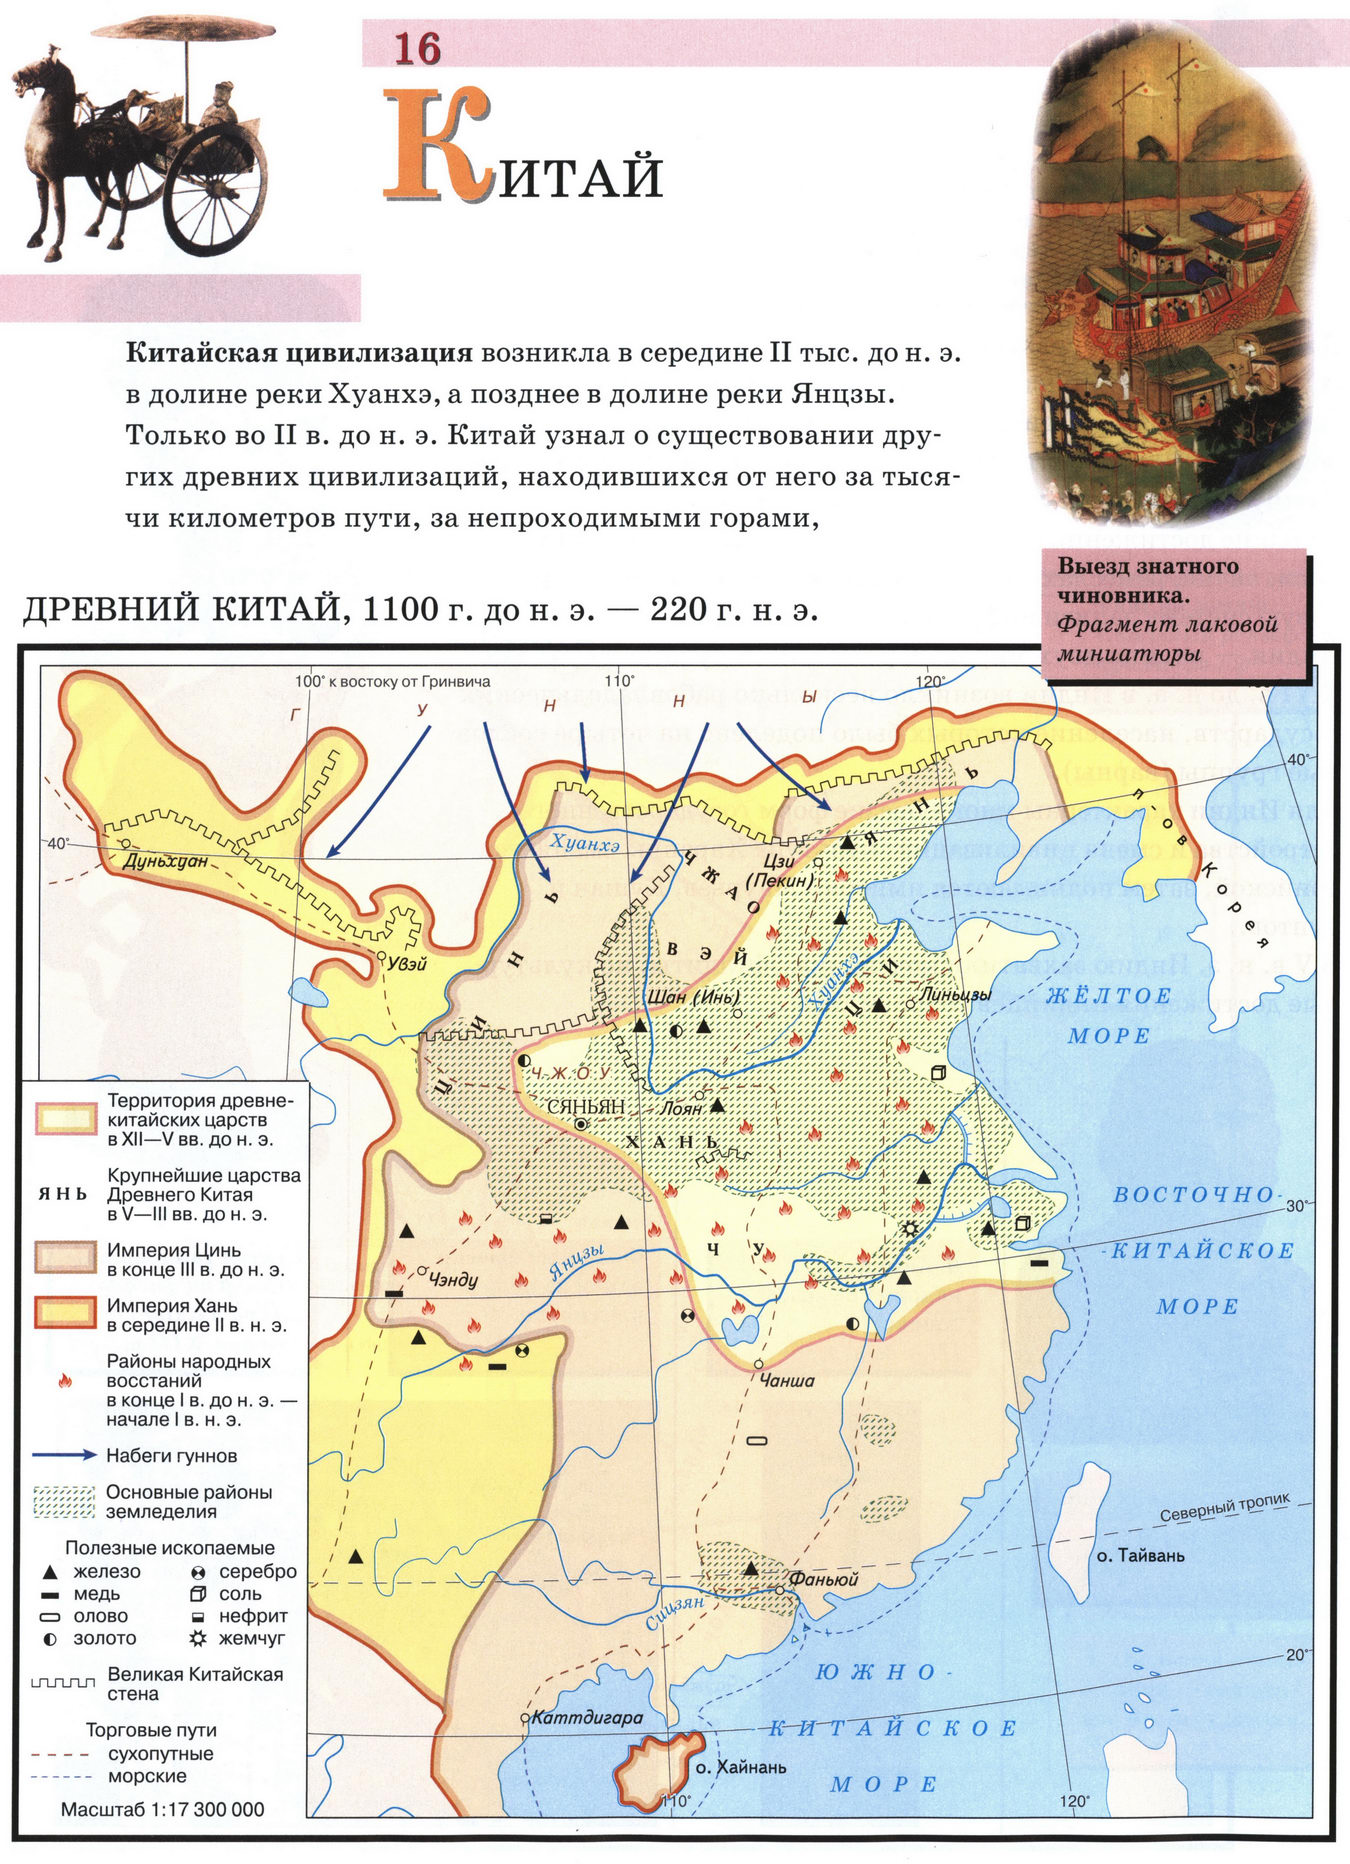 Древний Китай - карта атласа по истории Древнего мира